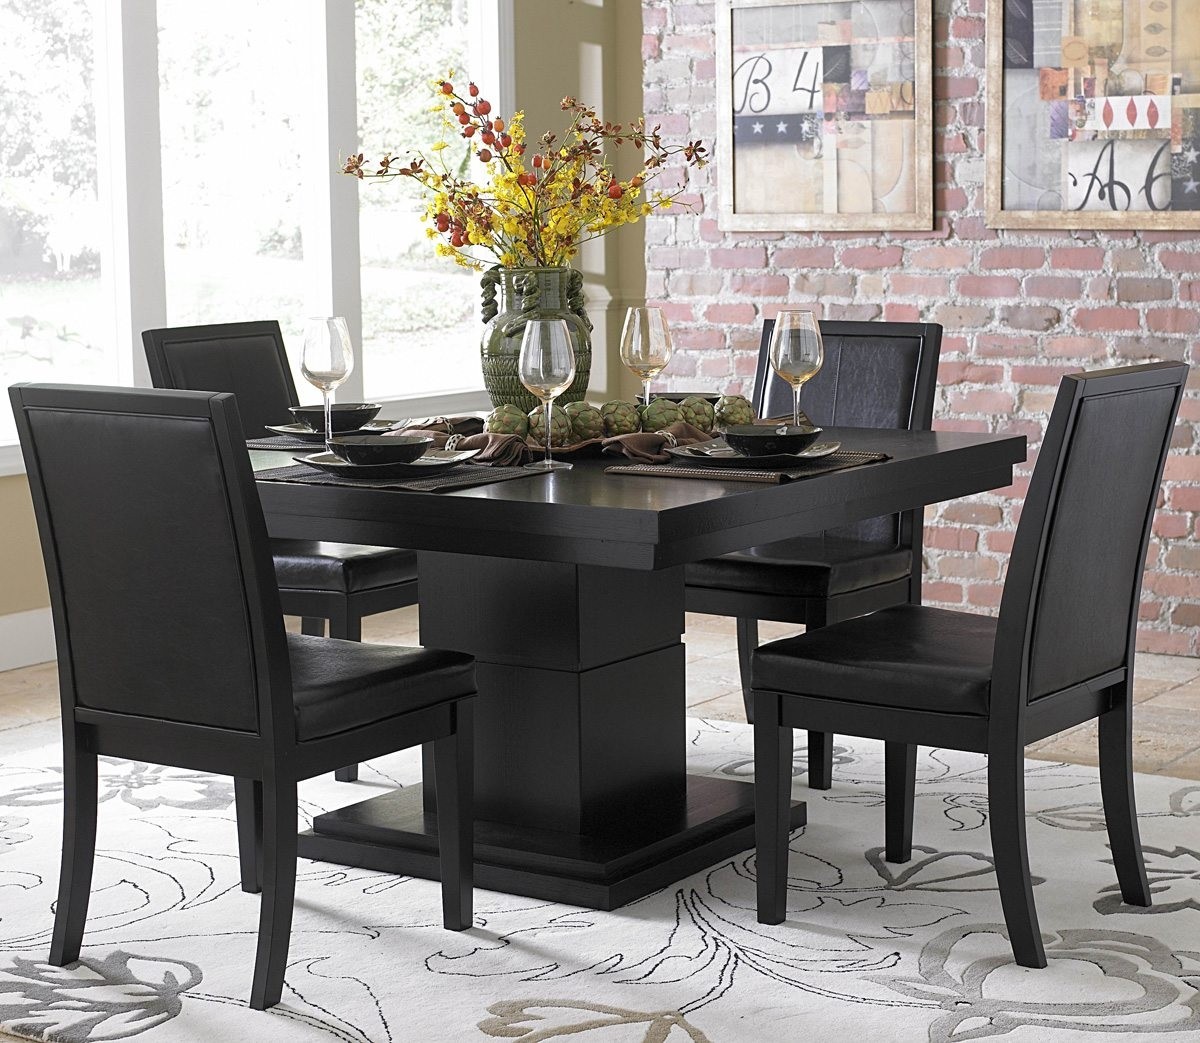 Homelegance cicero square pedestal dining table in black